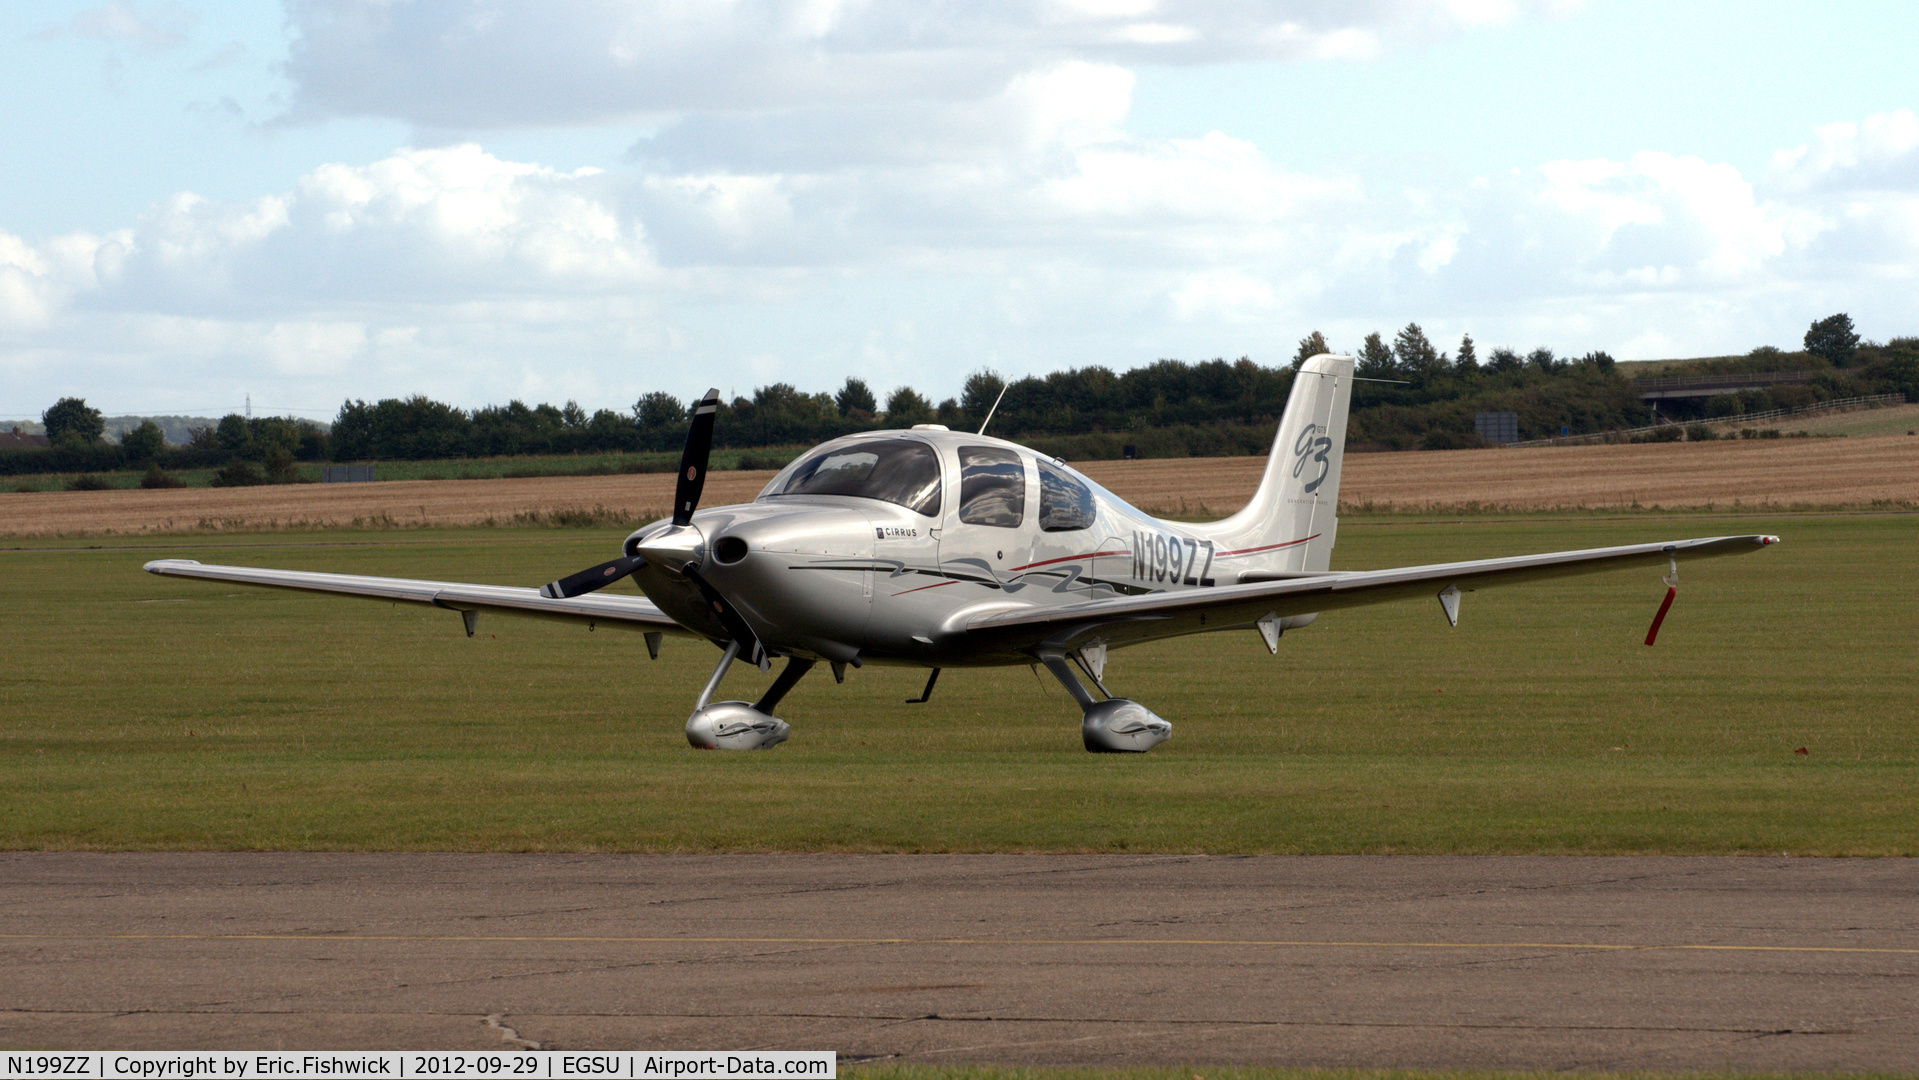 N199ZZ, 2007 Cirrus SR22 G3 GTS C/N 2542, 3. N199ZZ at Duxford Airfield.